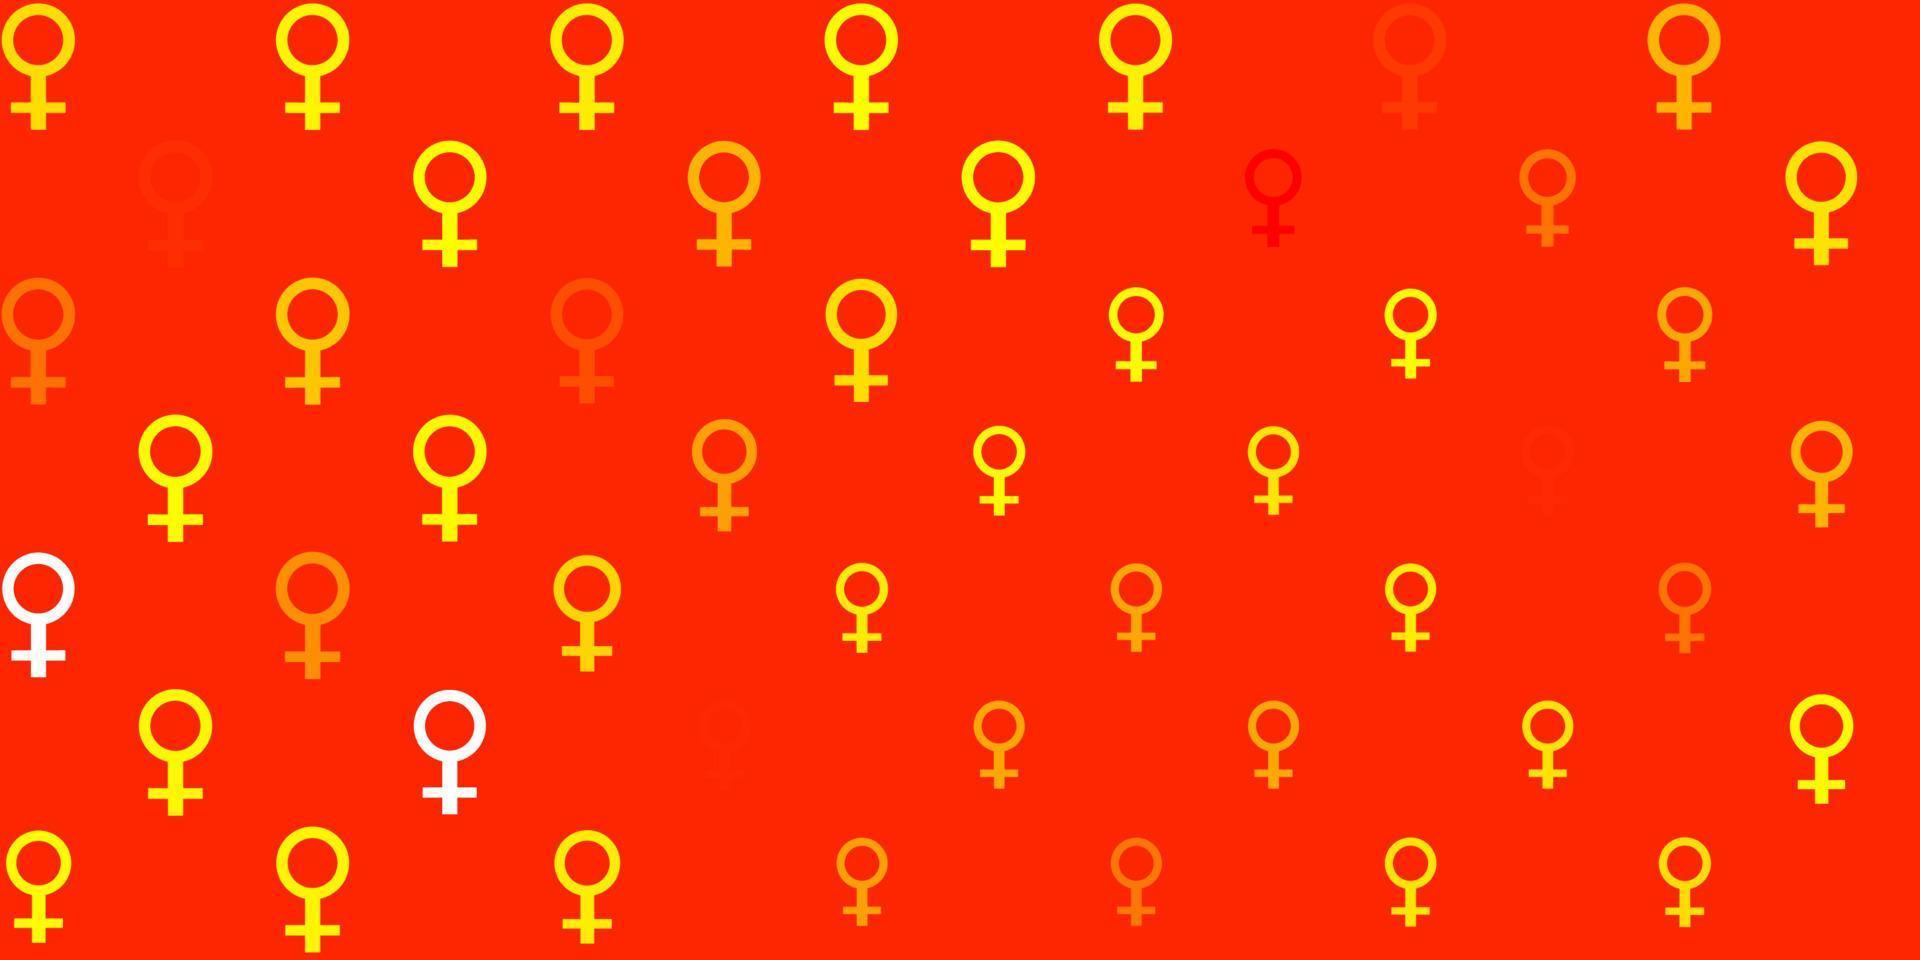 ljusröd, gul vektor bakgrund med kvinnor makt symboler.